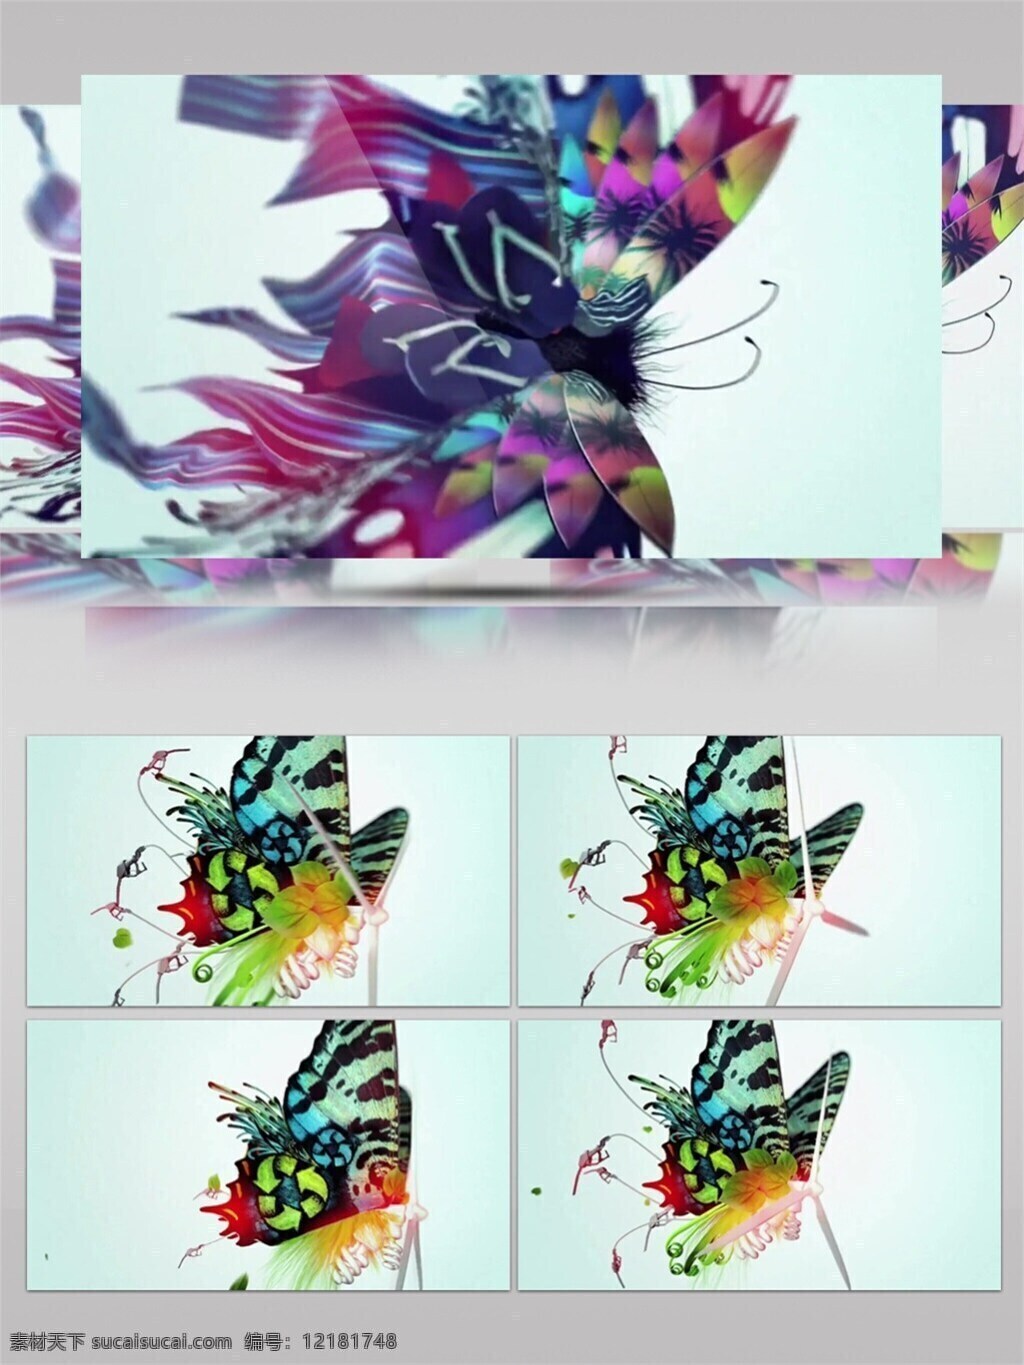 炫 酷 彩色 中国画 高清 视频 水墨中国画 昆虫 视频素材 动态视频素材